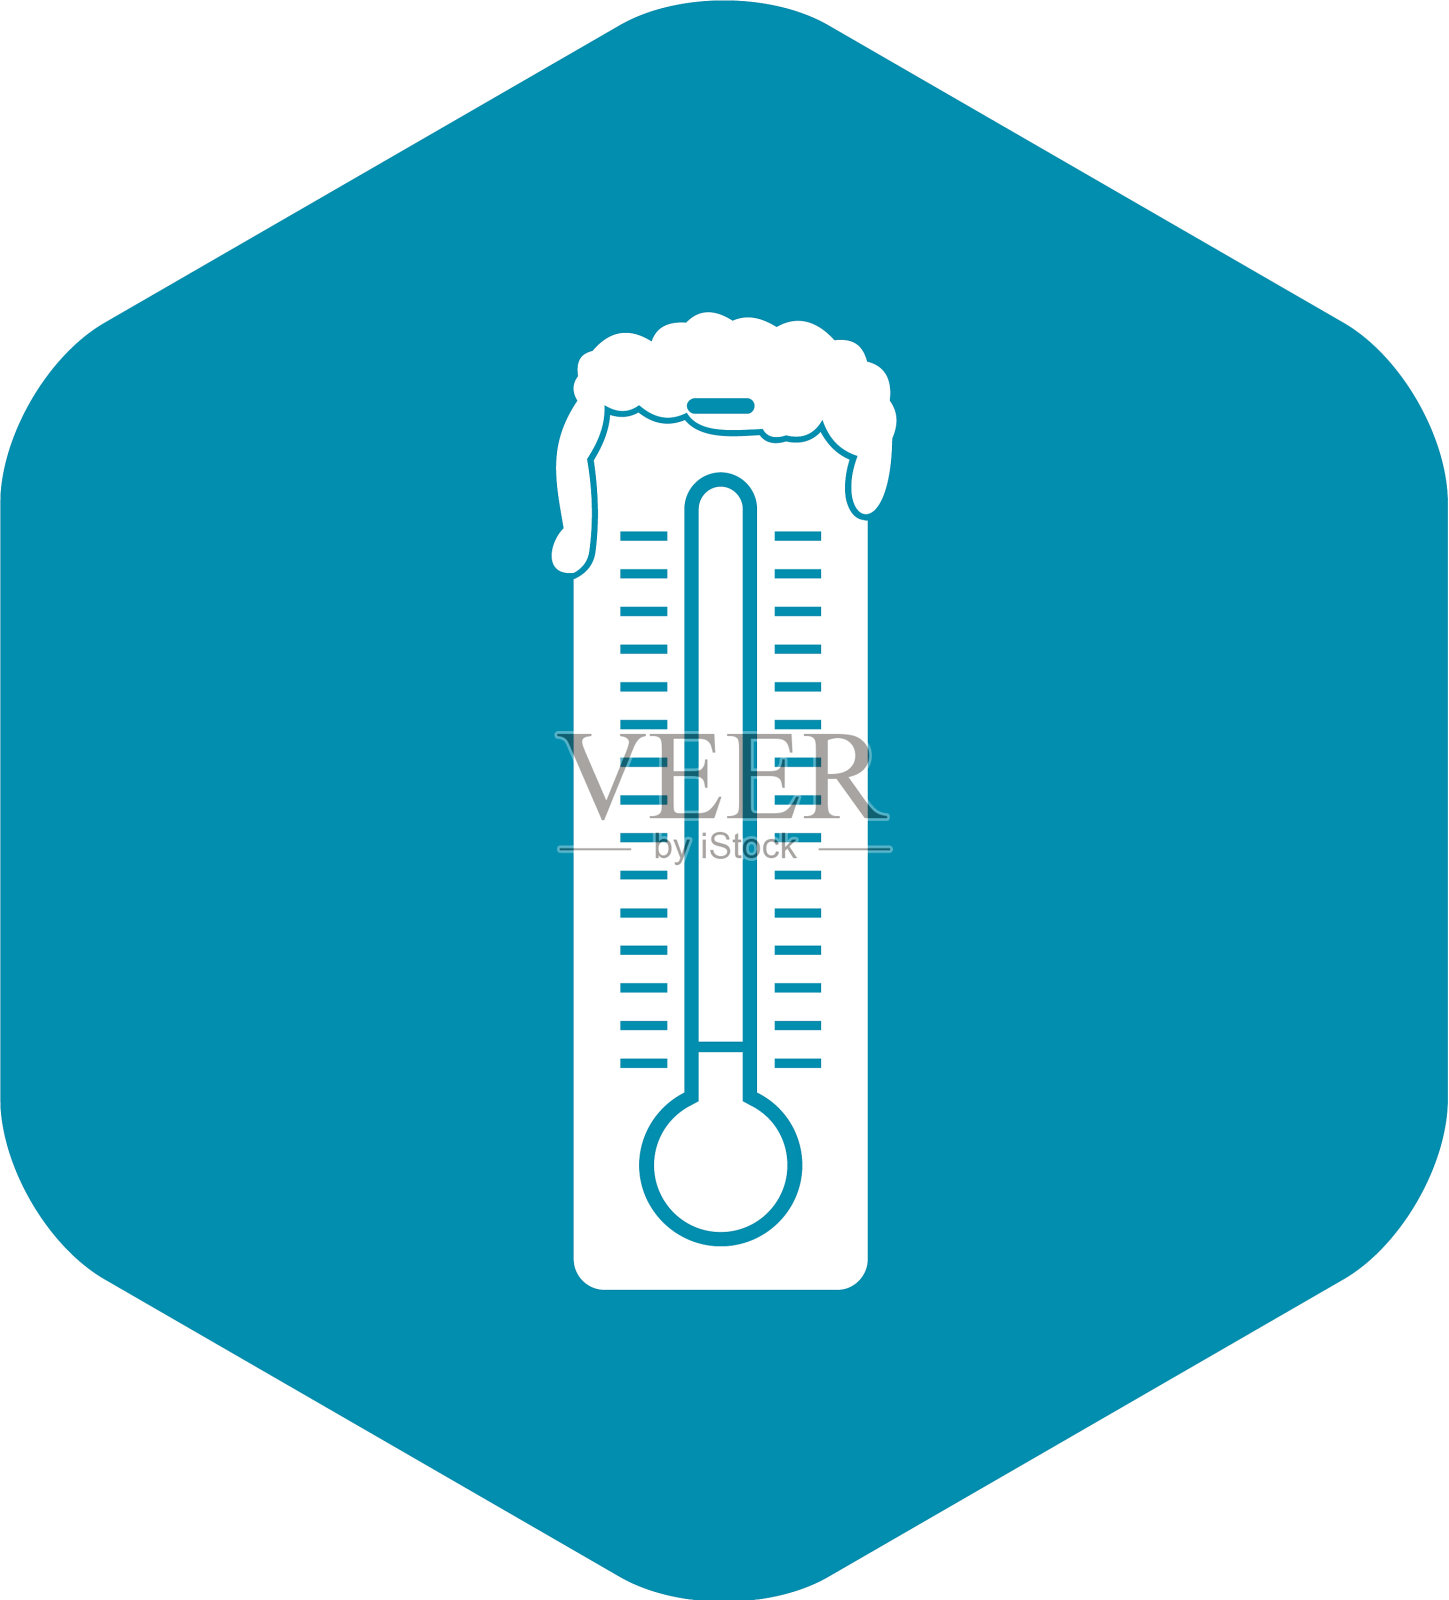 温度计图标样式简单插画图片素材